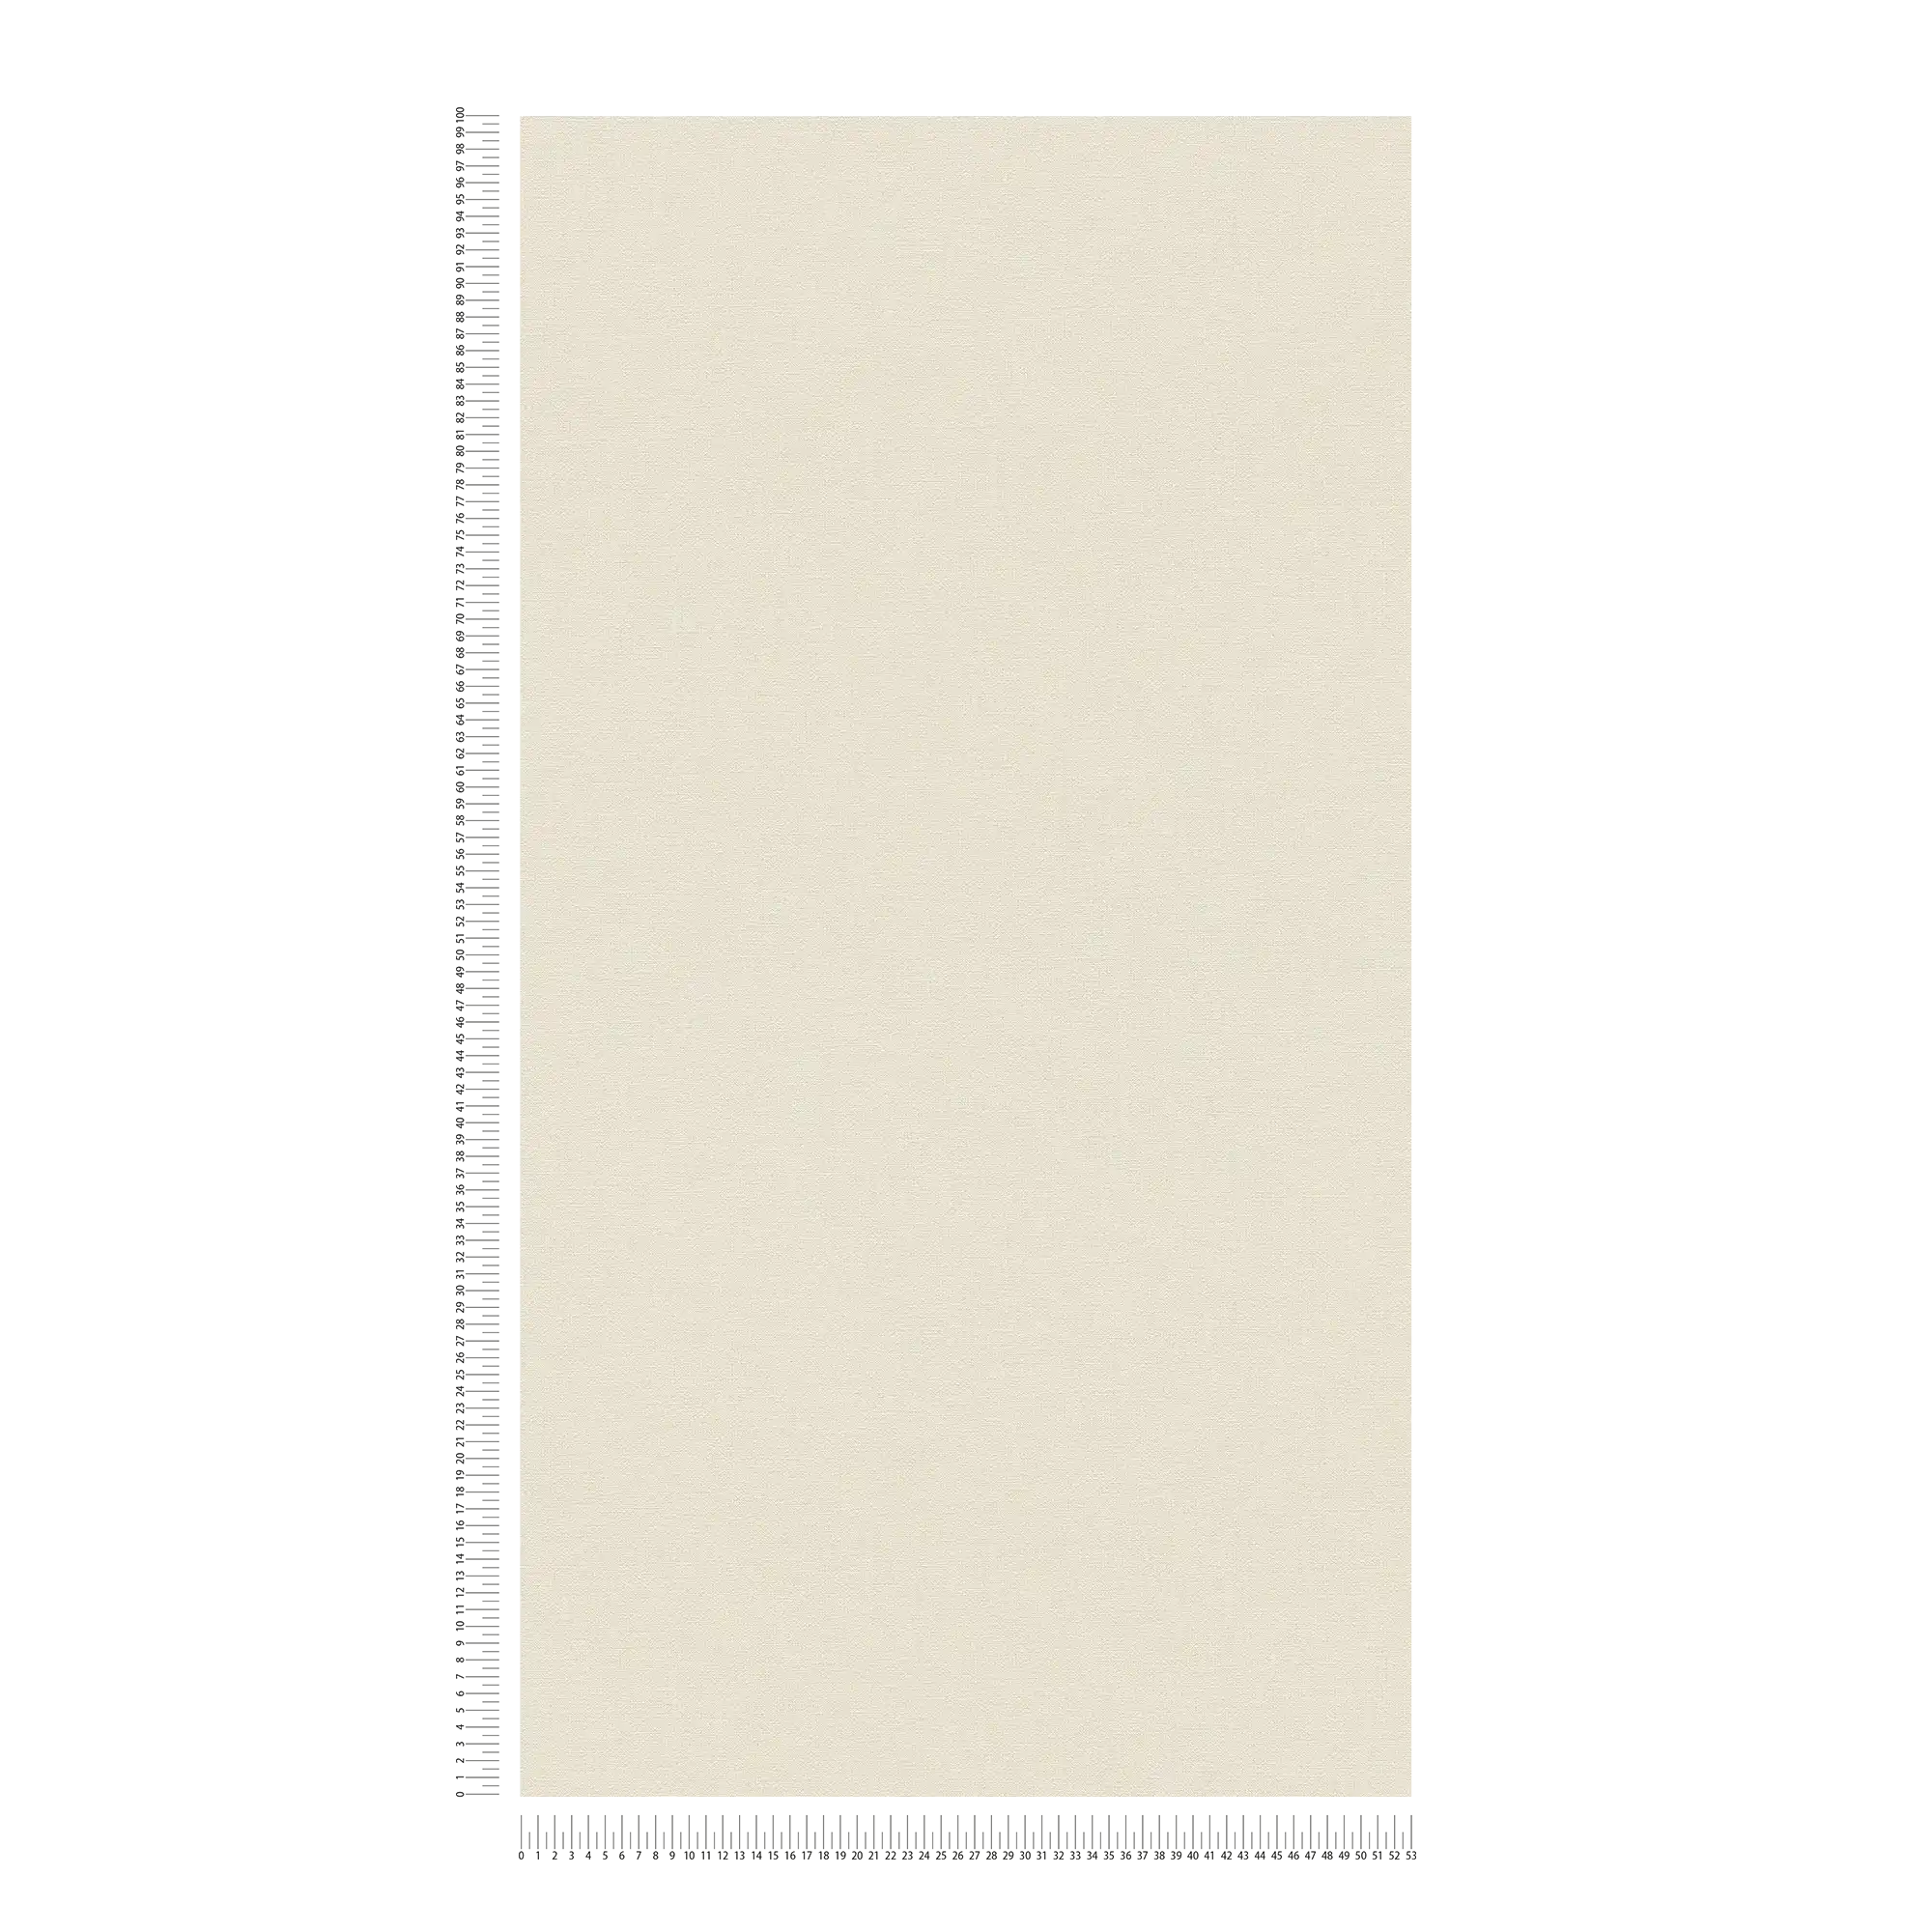             Papel pintado unitario sin PVC con aspecto de lino - beige, blanco
        